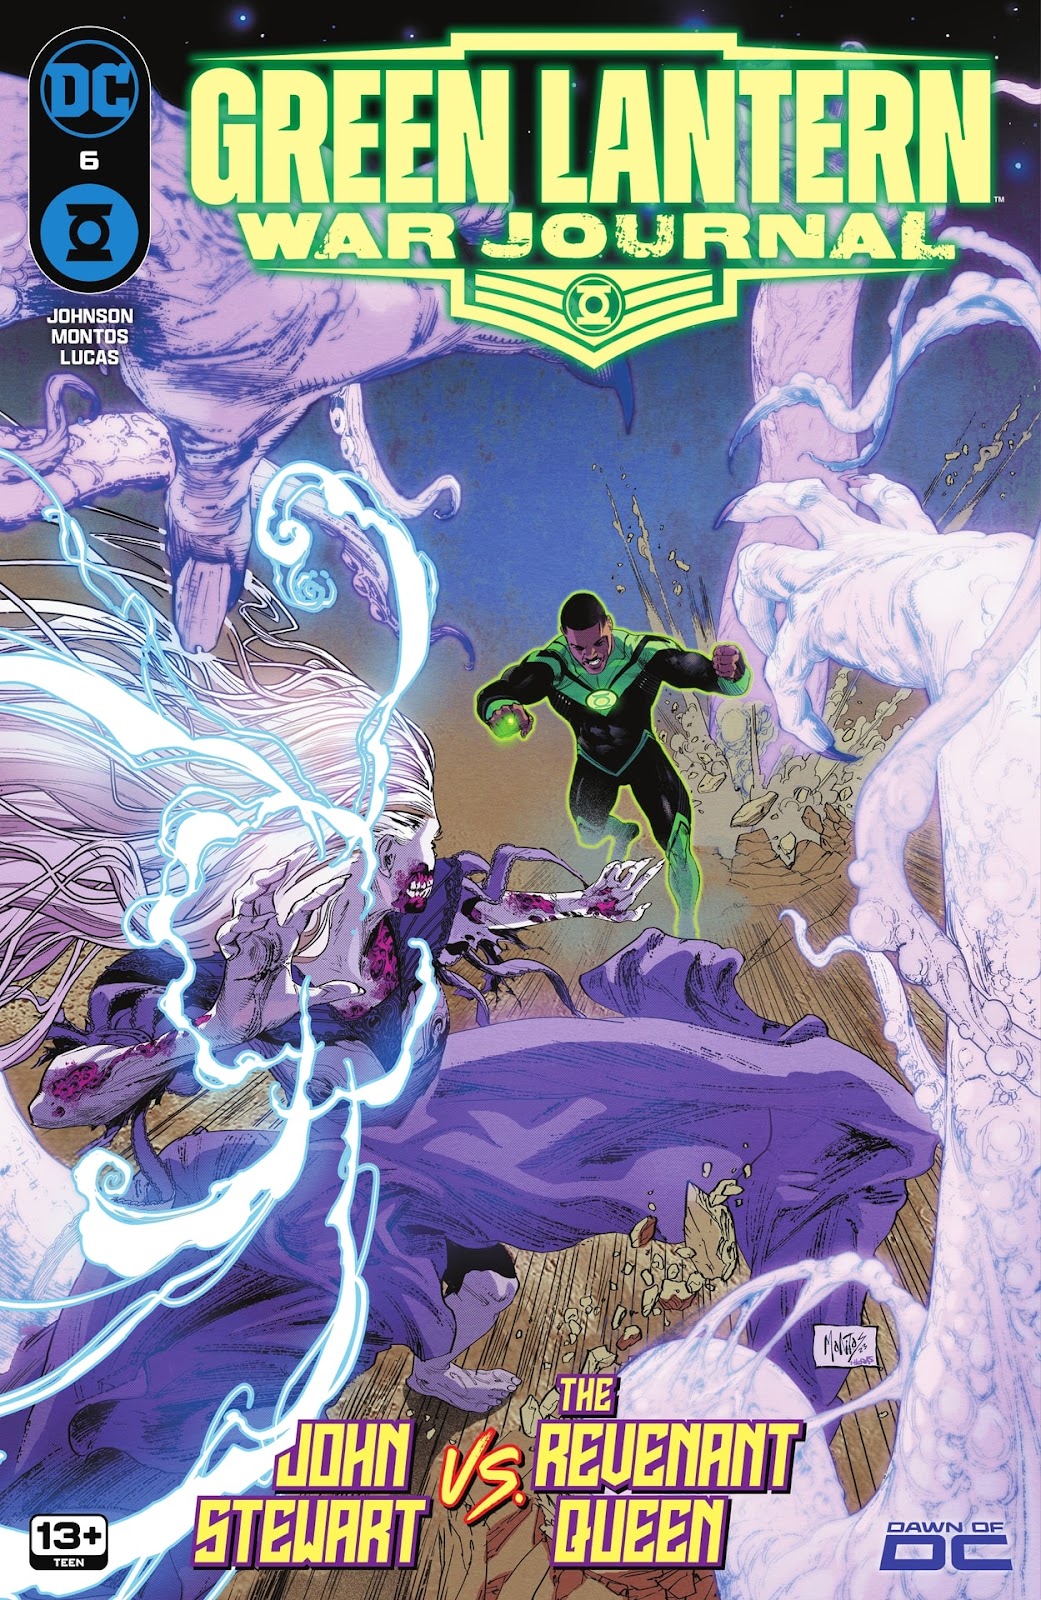 Green Lantern: War Journal issue 6 - Page 1